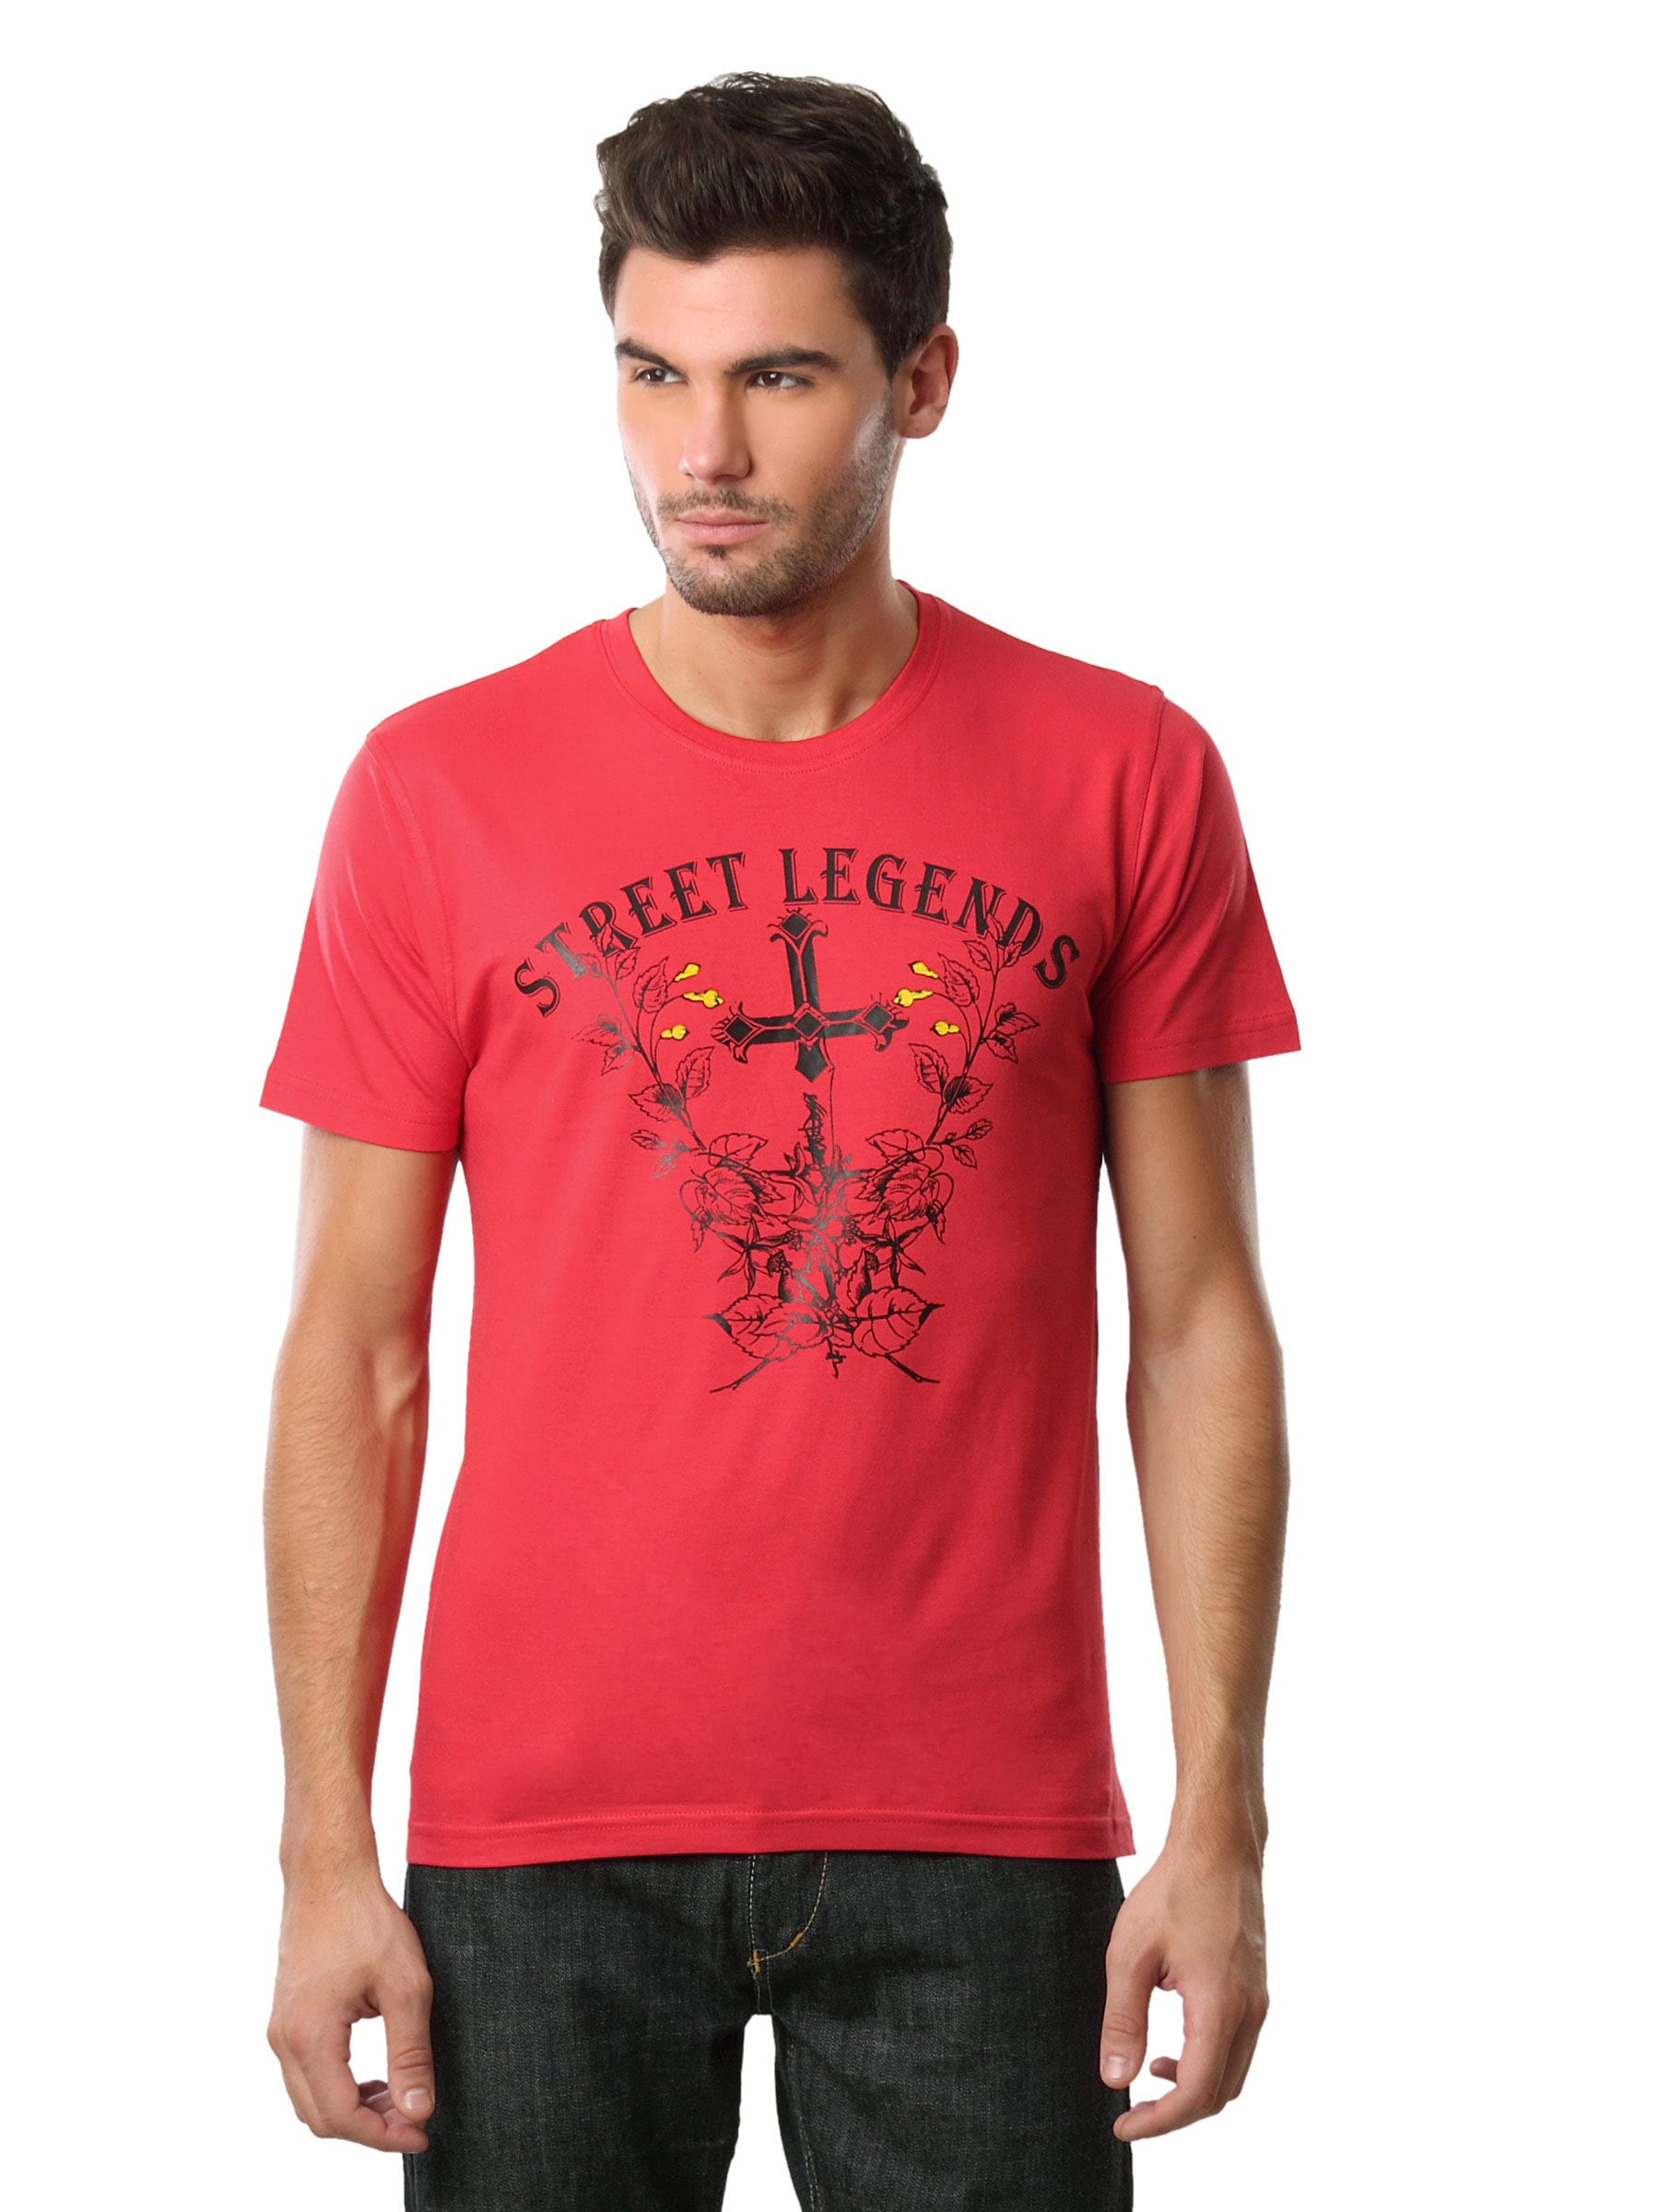 Myntra Men Street Legend Red T-shirt